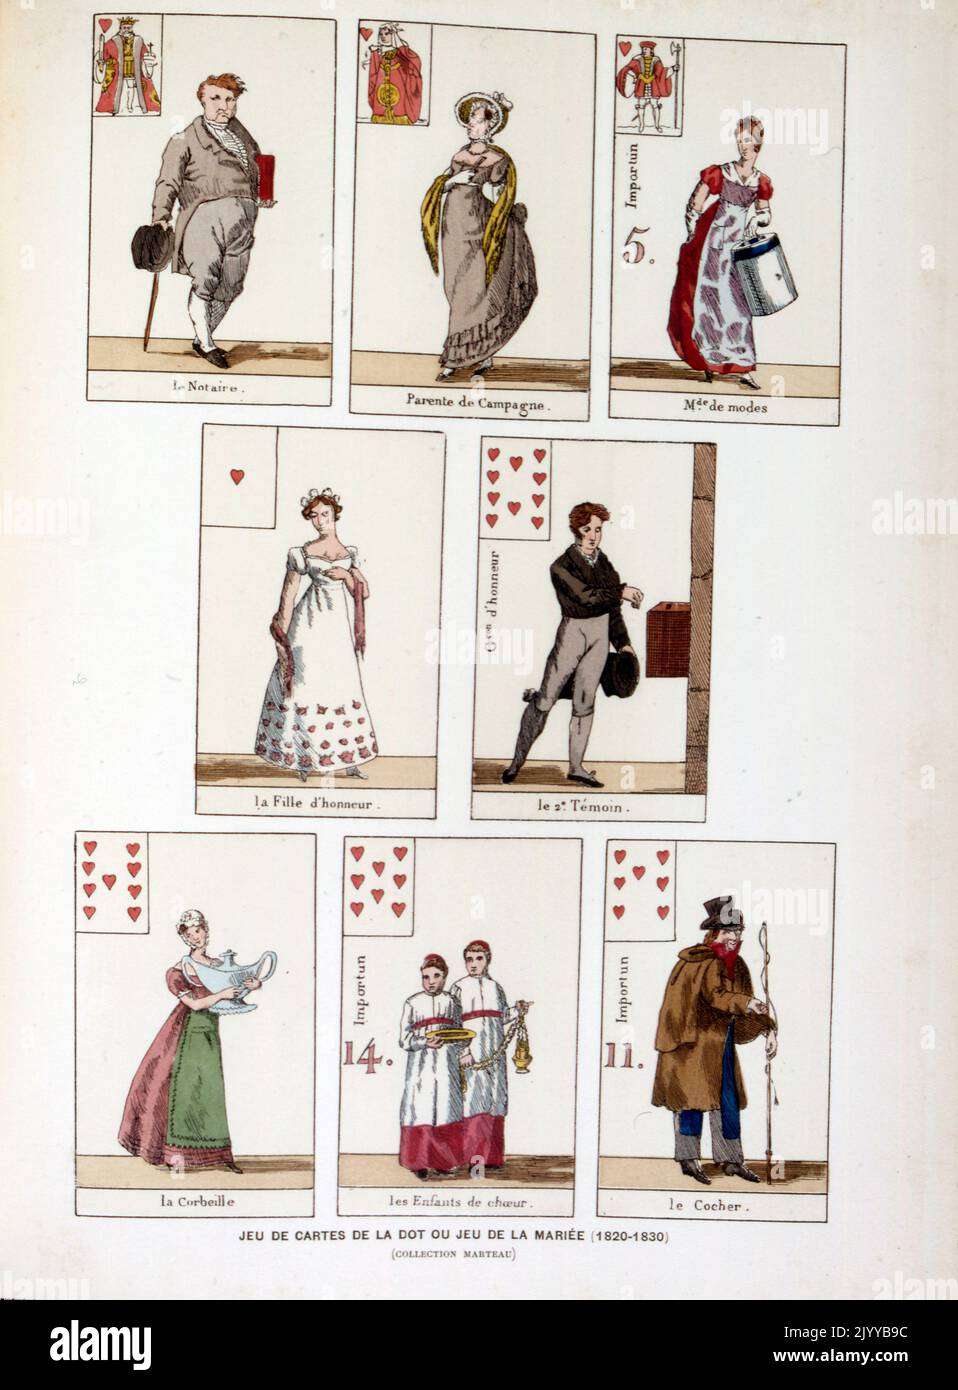 Farbige Darstellung von Spielkarten, die das Spiel des Punktes darstellen, auch bekannt als das Spiel der verheirateten Frau (1820-1830). Stockfoto